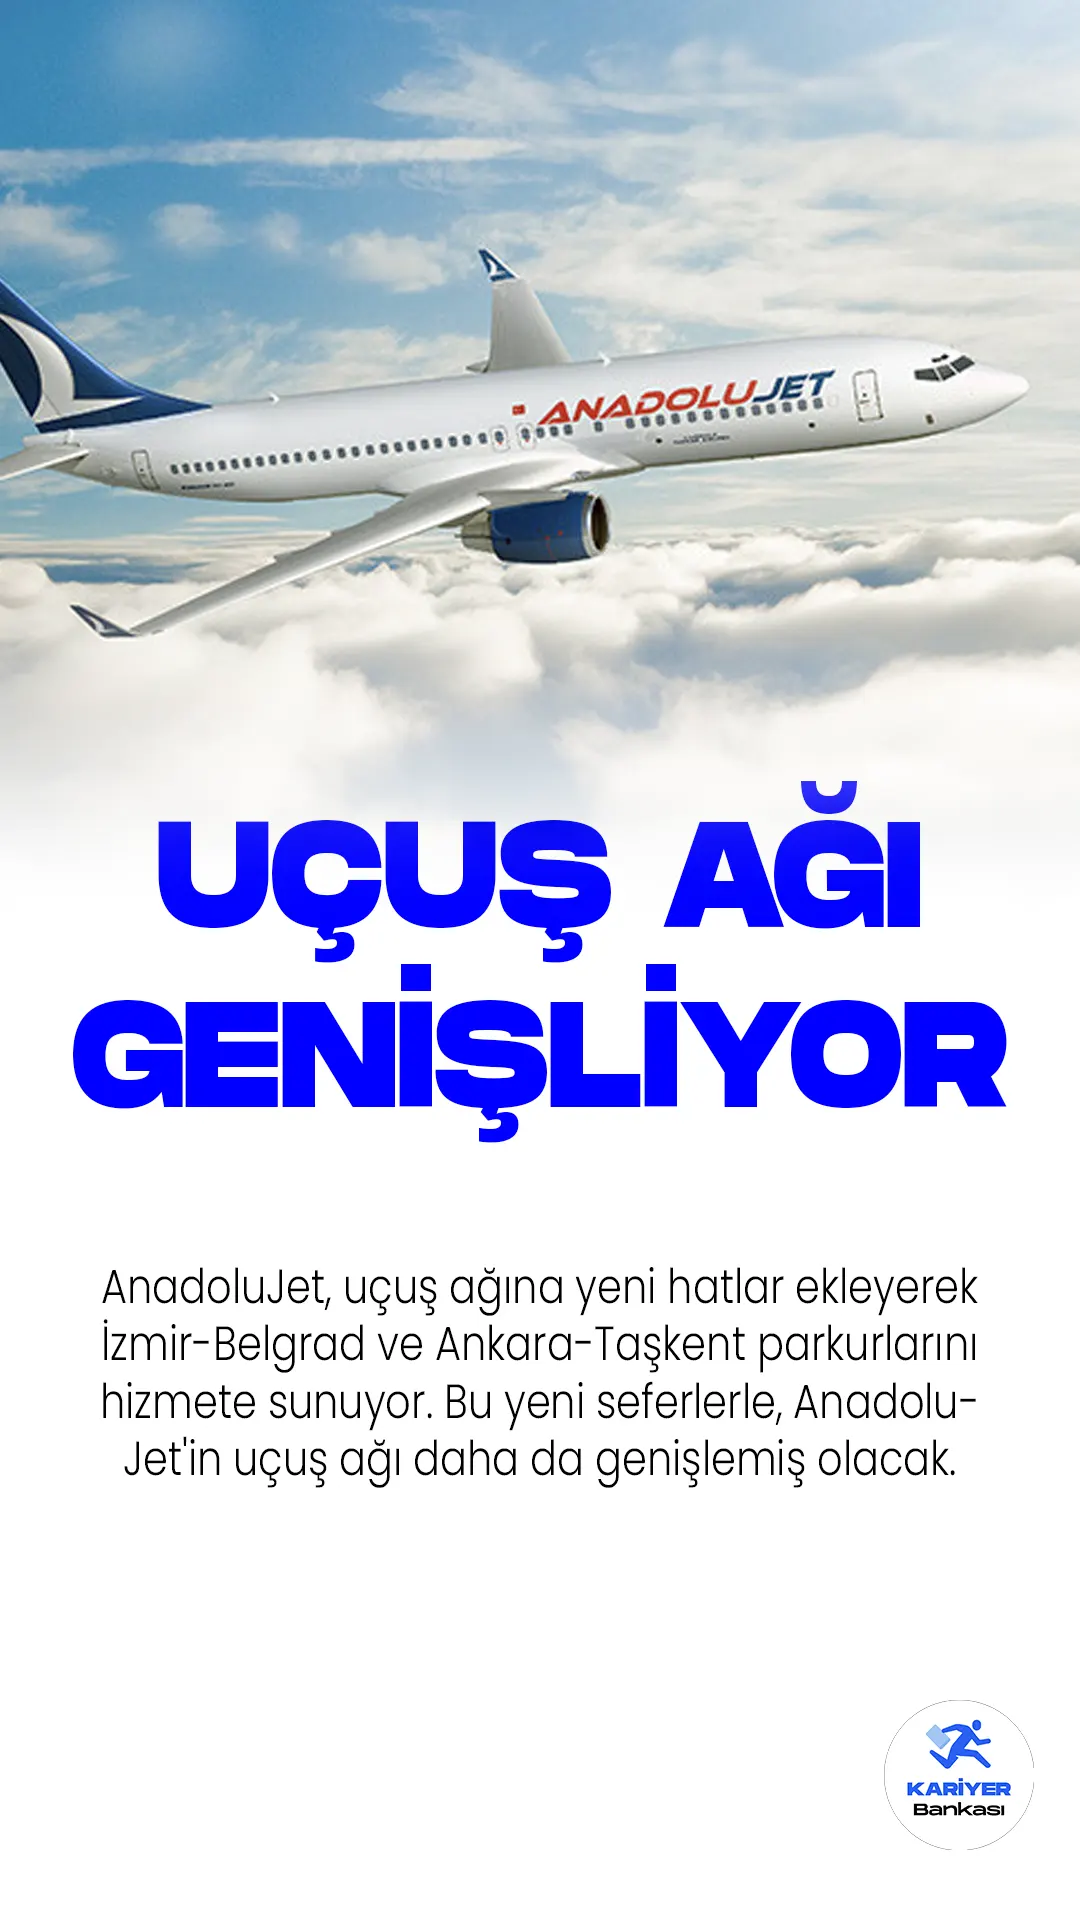 AnadoluJet, uçuş ağına yeni hatlar ekleyerek İzmir-Belgrad ve Ankara-Taşkent parkurlarını hizmete sunuyor. Bu yeni seferlerle, AnadoluJet'in uçuş ağı daha da genişlemiş olacak.